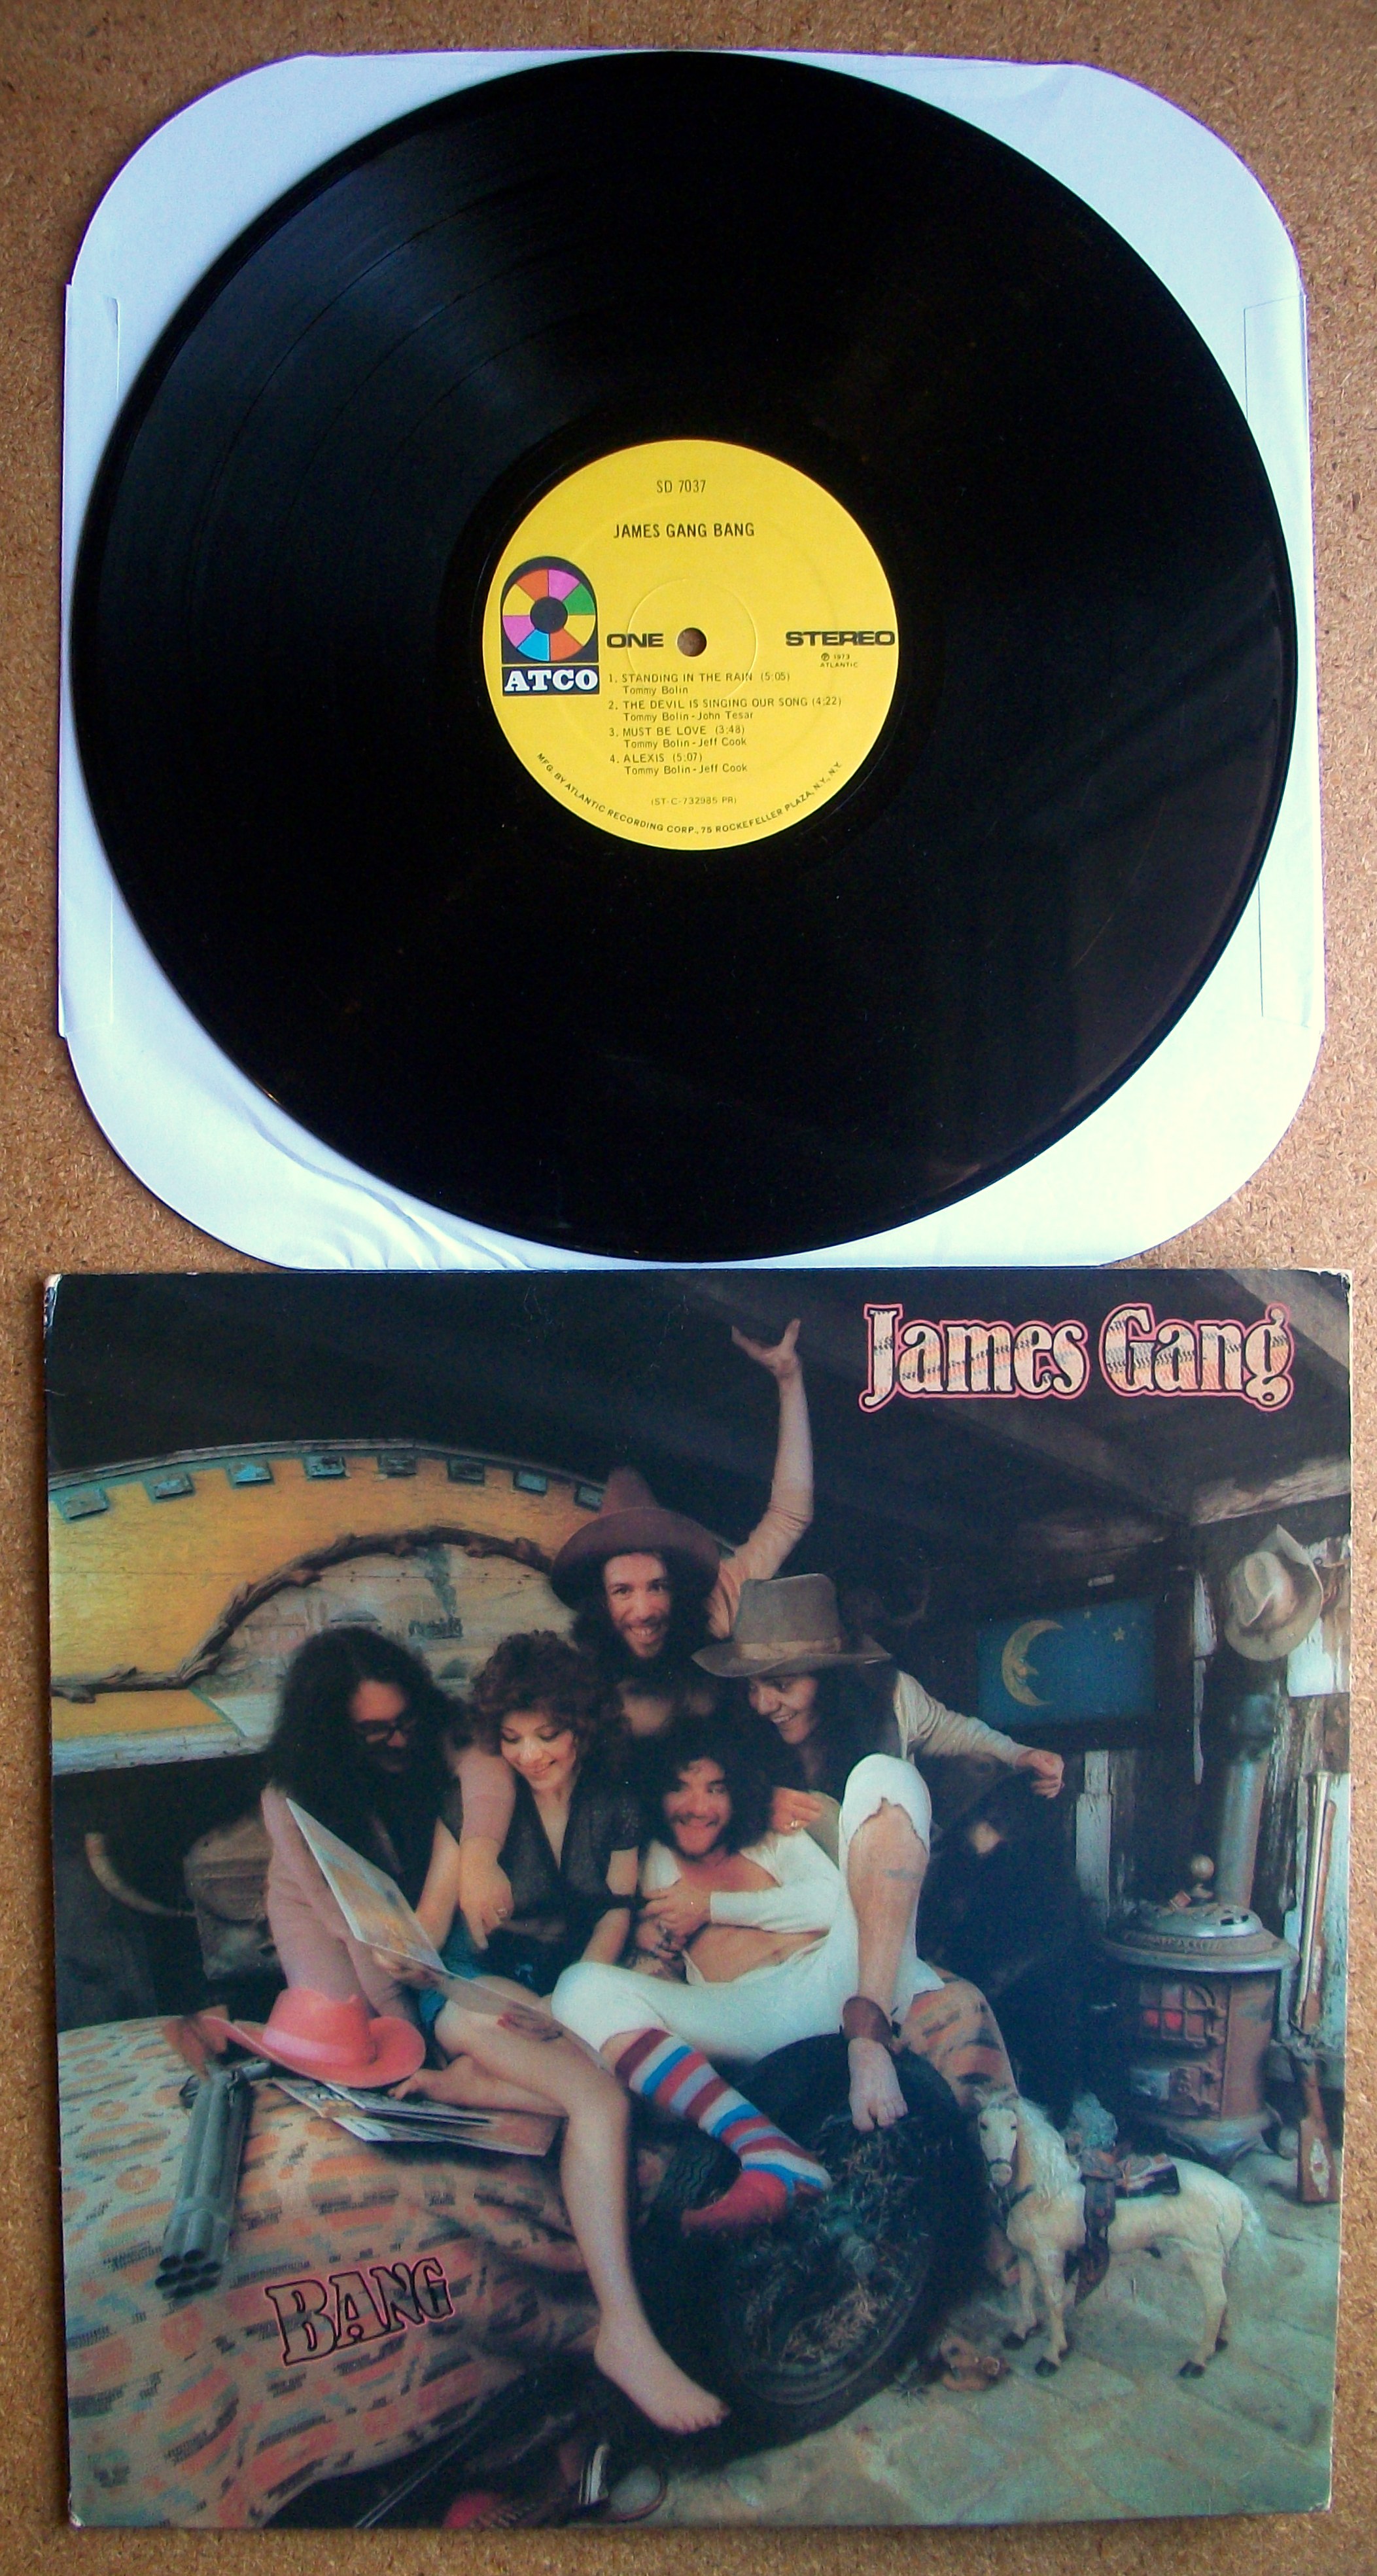 James bang. James gang - had enough.